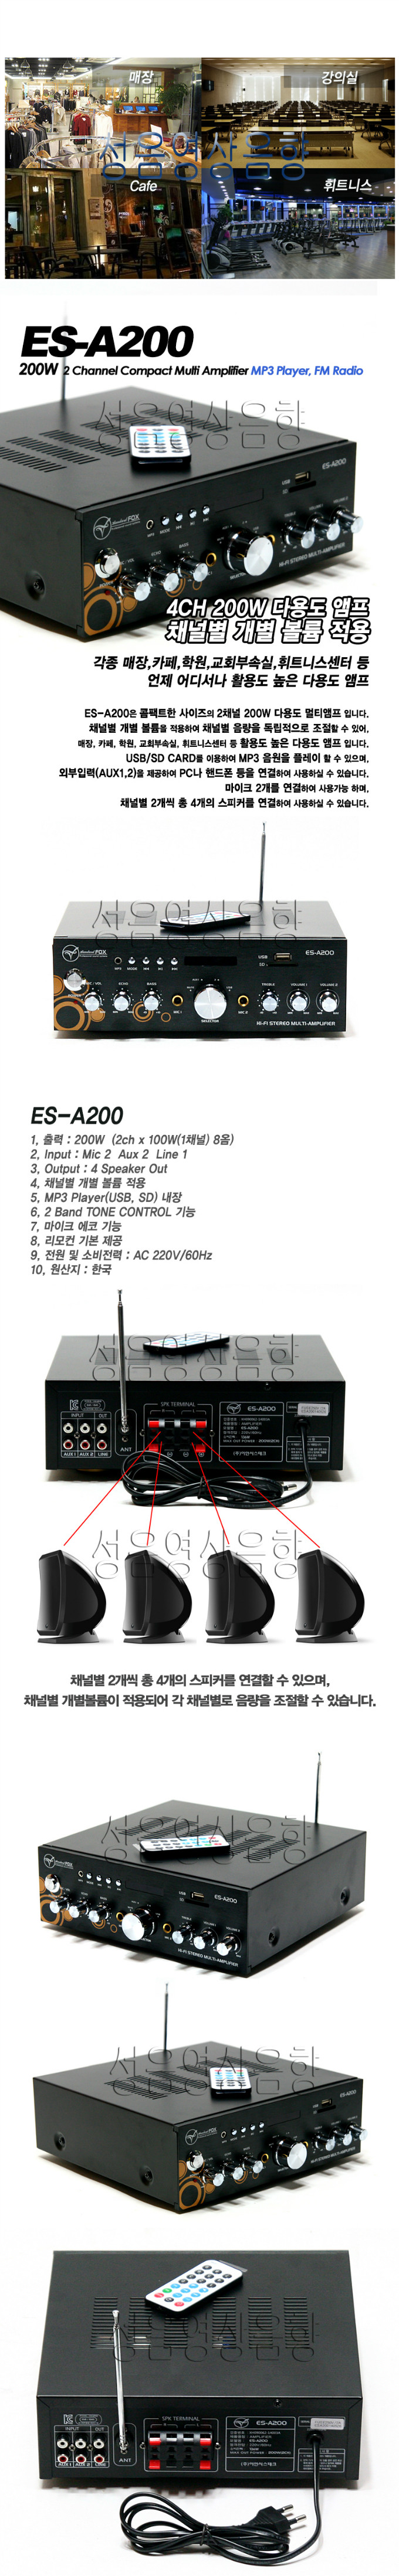 ES-A200 copy.jpg